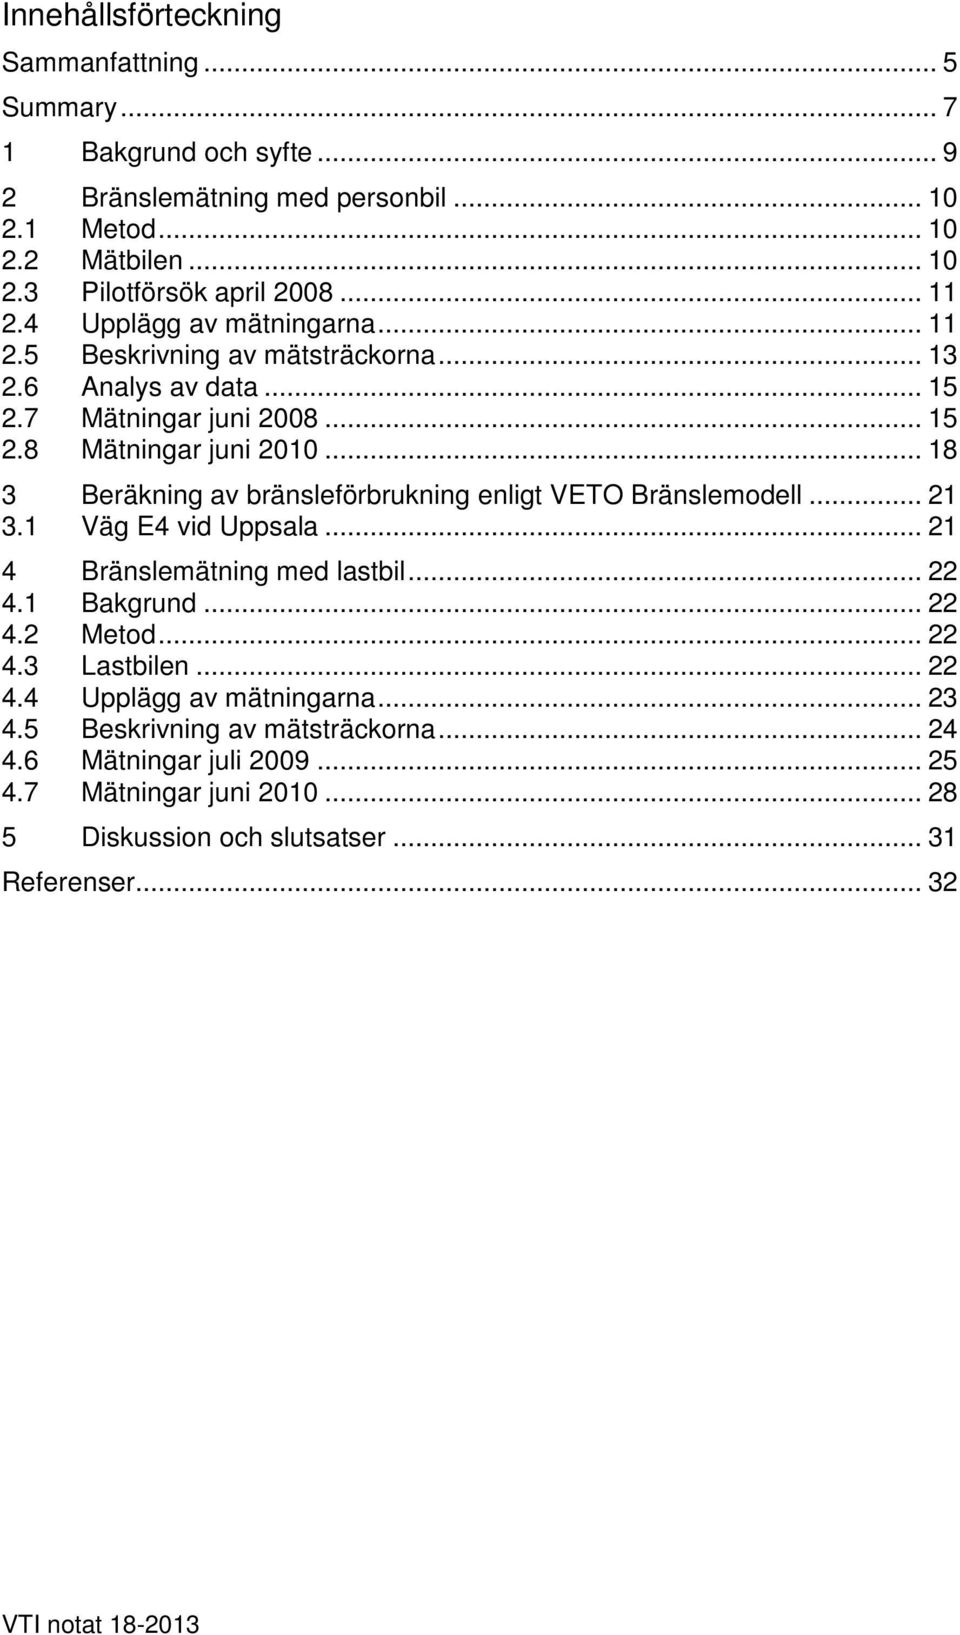 .. 18 3 Beräkning av bränsleförbrukning enligt VETO Bränslemodell... 21 3.1 Väg E4 vid Uppsala... 21 4 Bränslemätning med lastbil... 22 4.1 Bakgrund... 22 4.2 Metod... 22 4.3 Lastbilen.